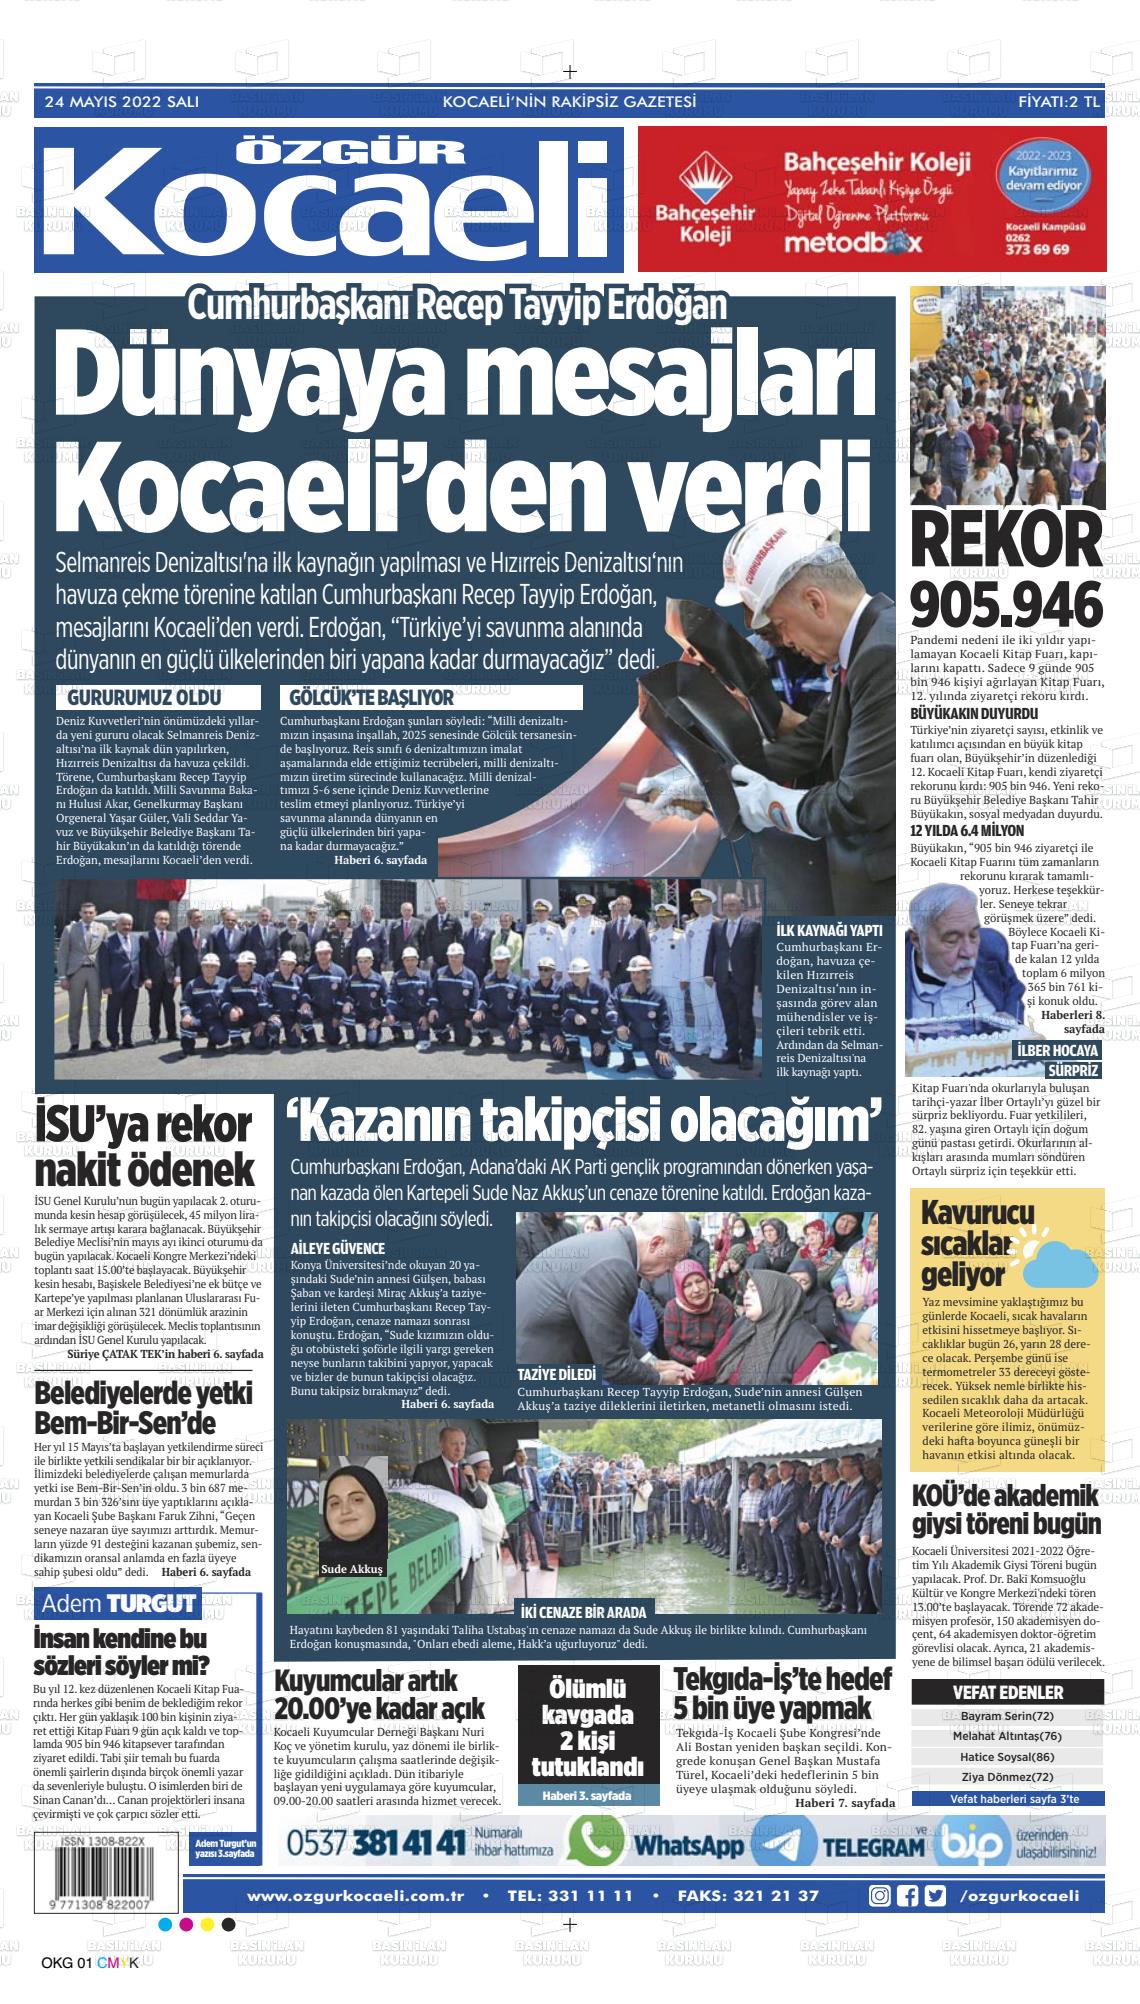 24 Mayıs 2022 Özgür Kocaeli Gazete Manşeti